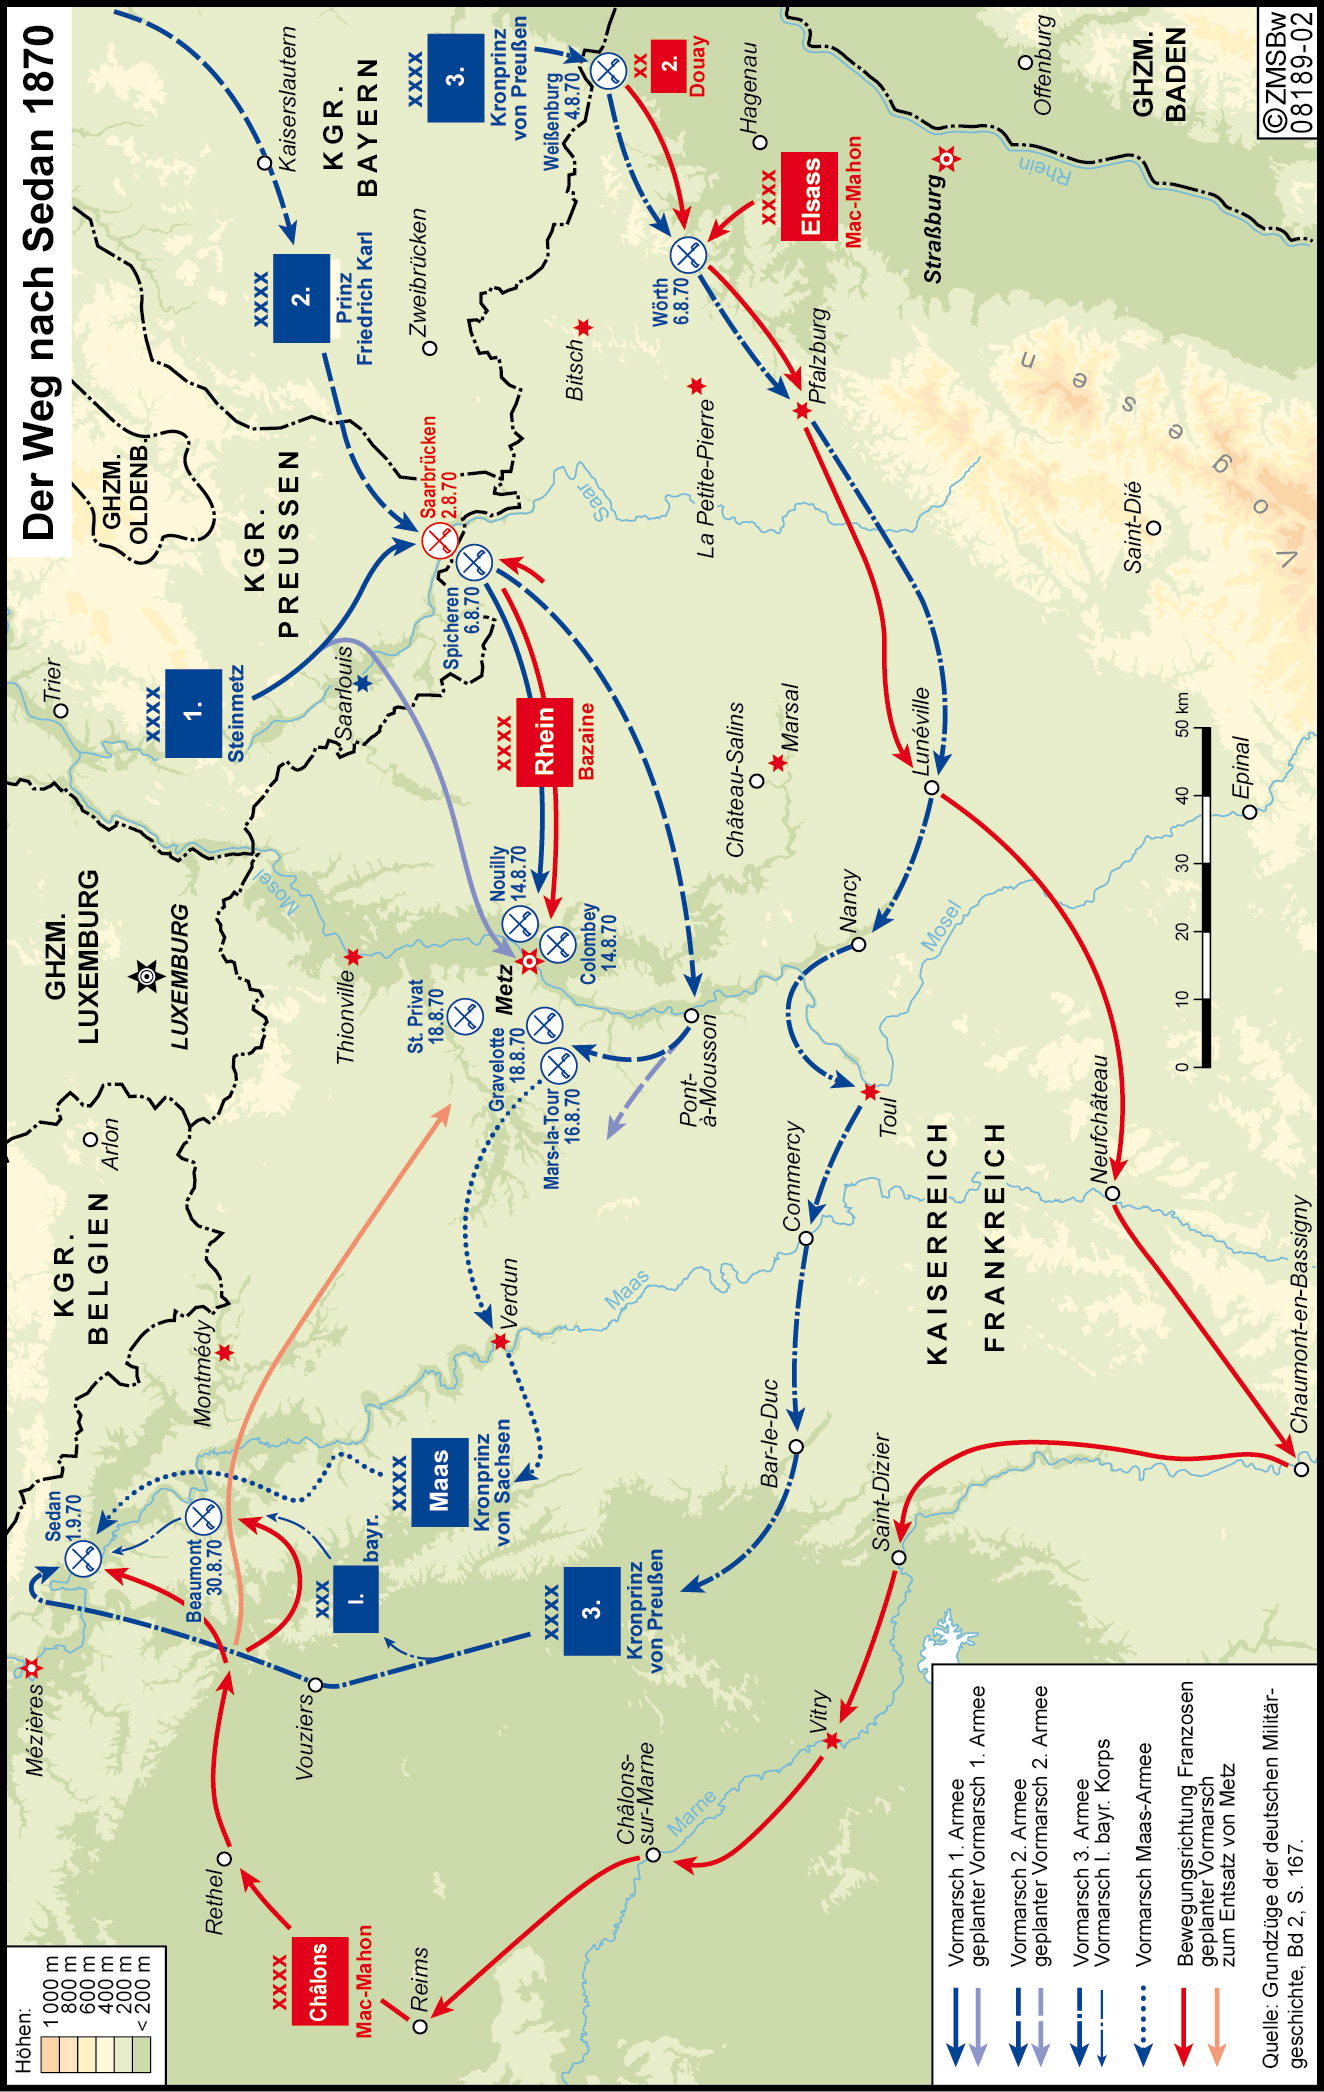 Blaue und Rote Pfeile zeigen den geplanten Vormarsch der Armeen